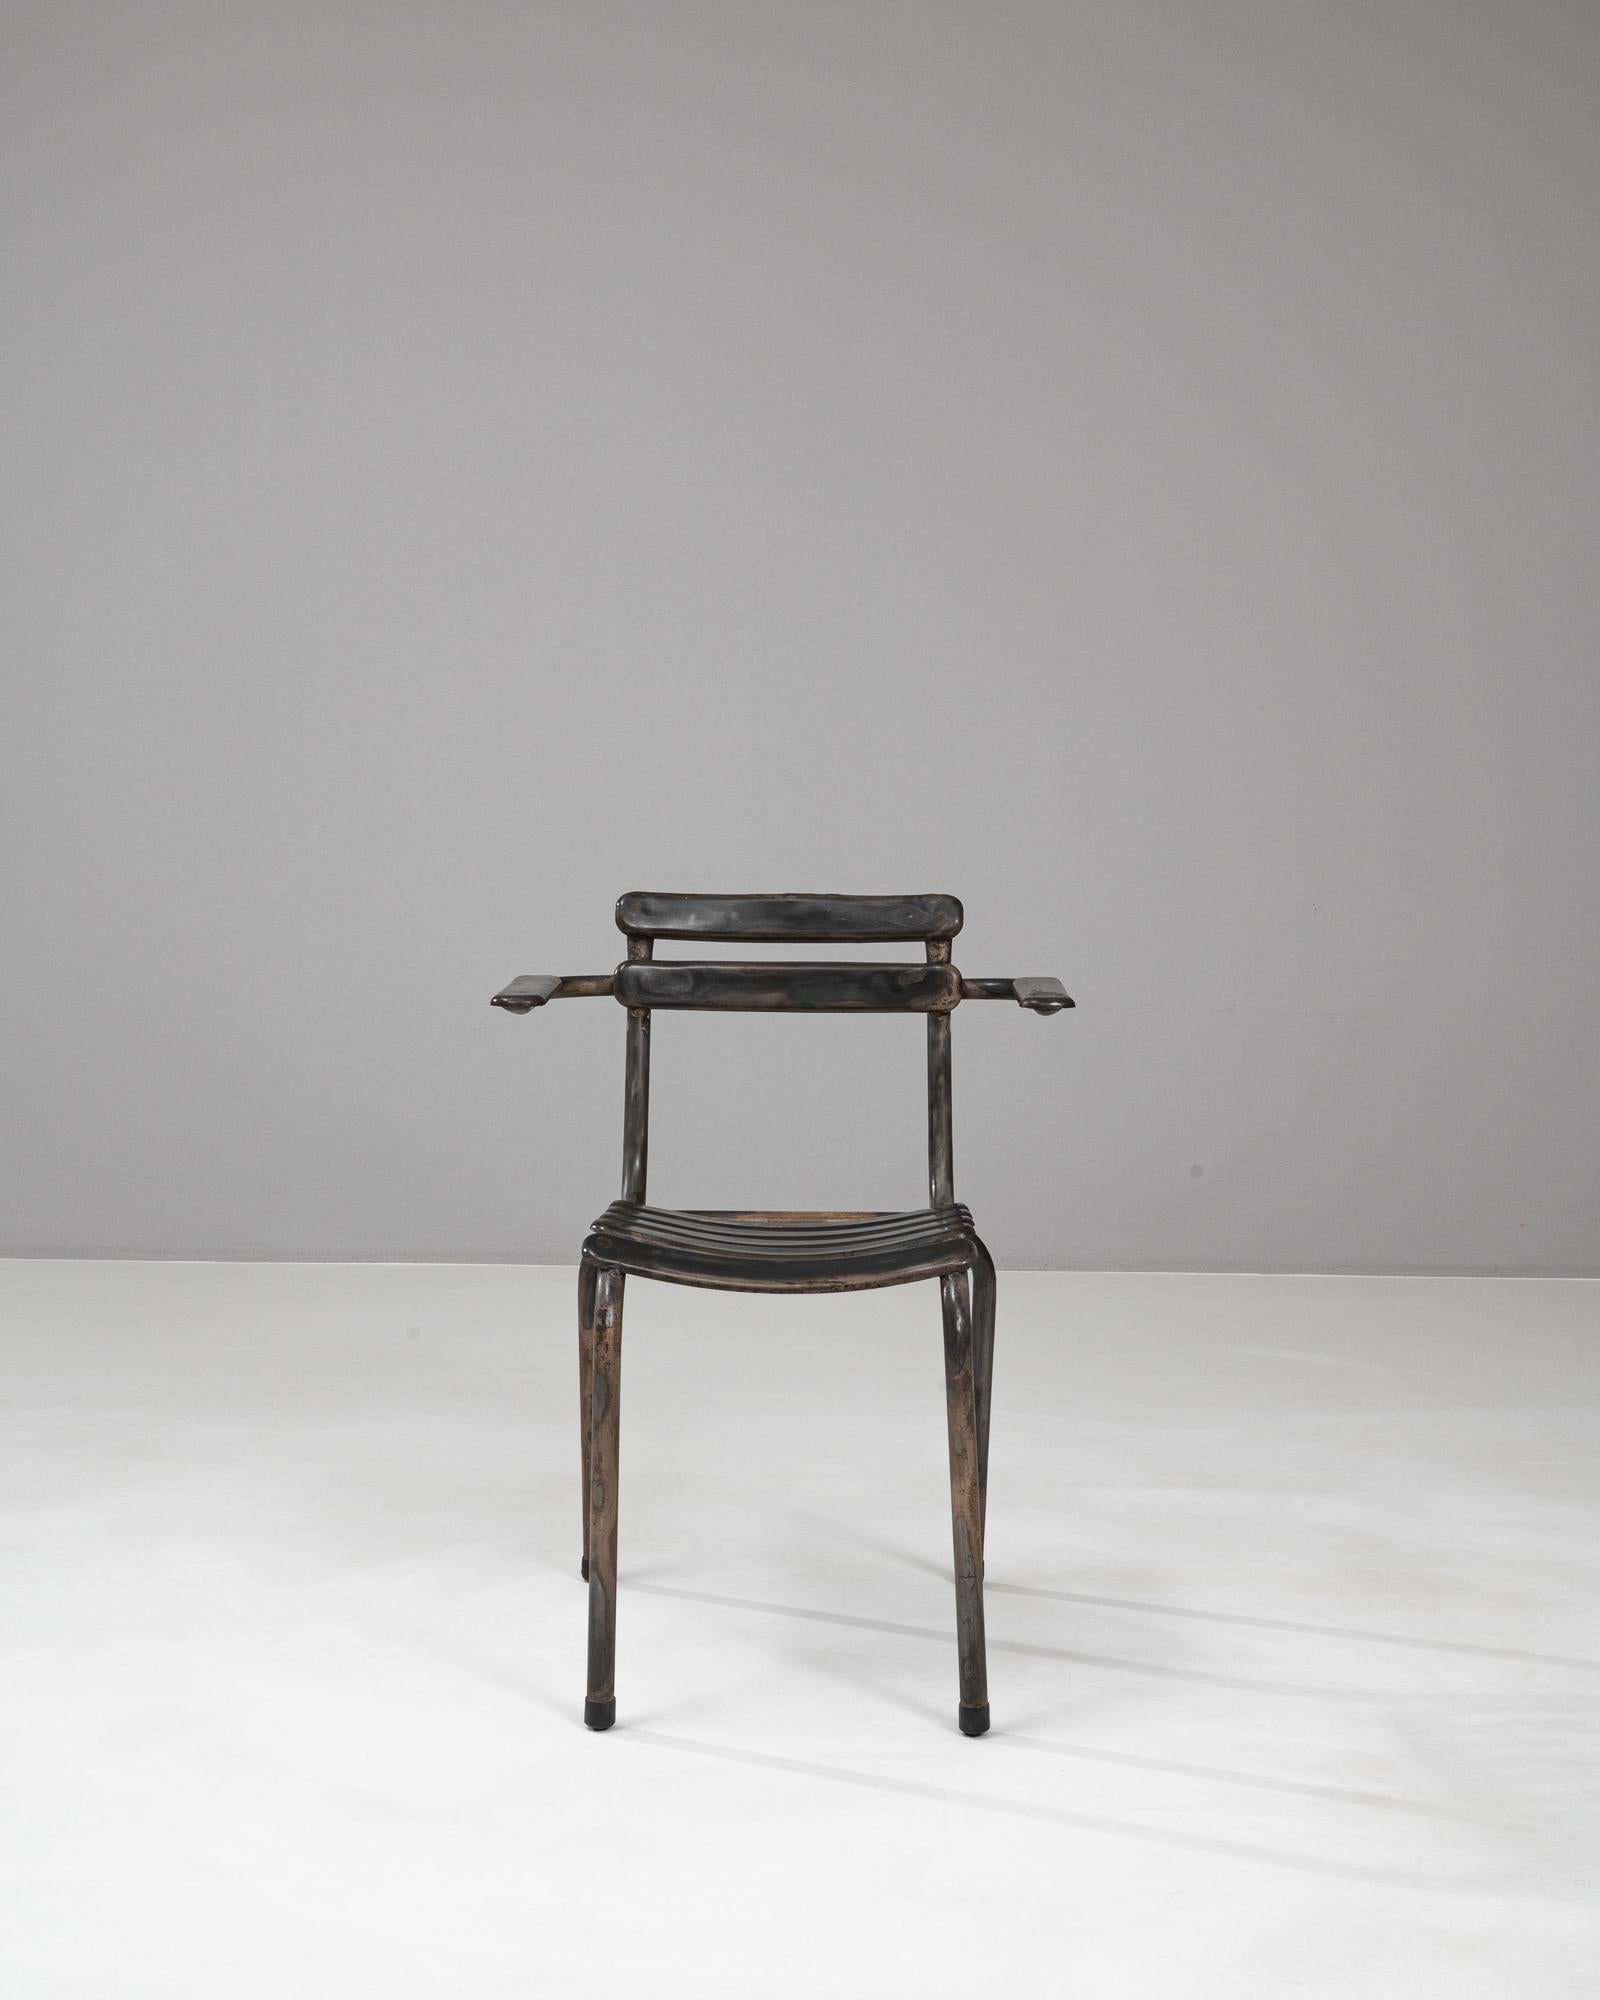 Byne présente la chaise en métal française du 20e siècle, un chef-d'œuvre de design industriel vintage qui apporte sans effort une touche d'élégance historique à n'importe quel espace. Fabriquée en métal robuste, cette chaise présente un cadre